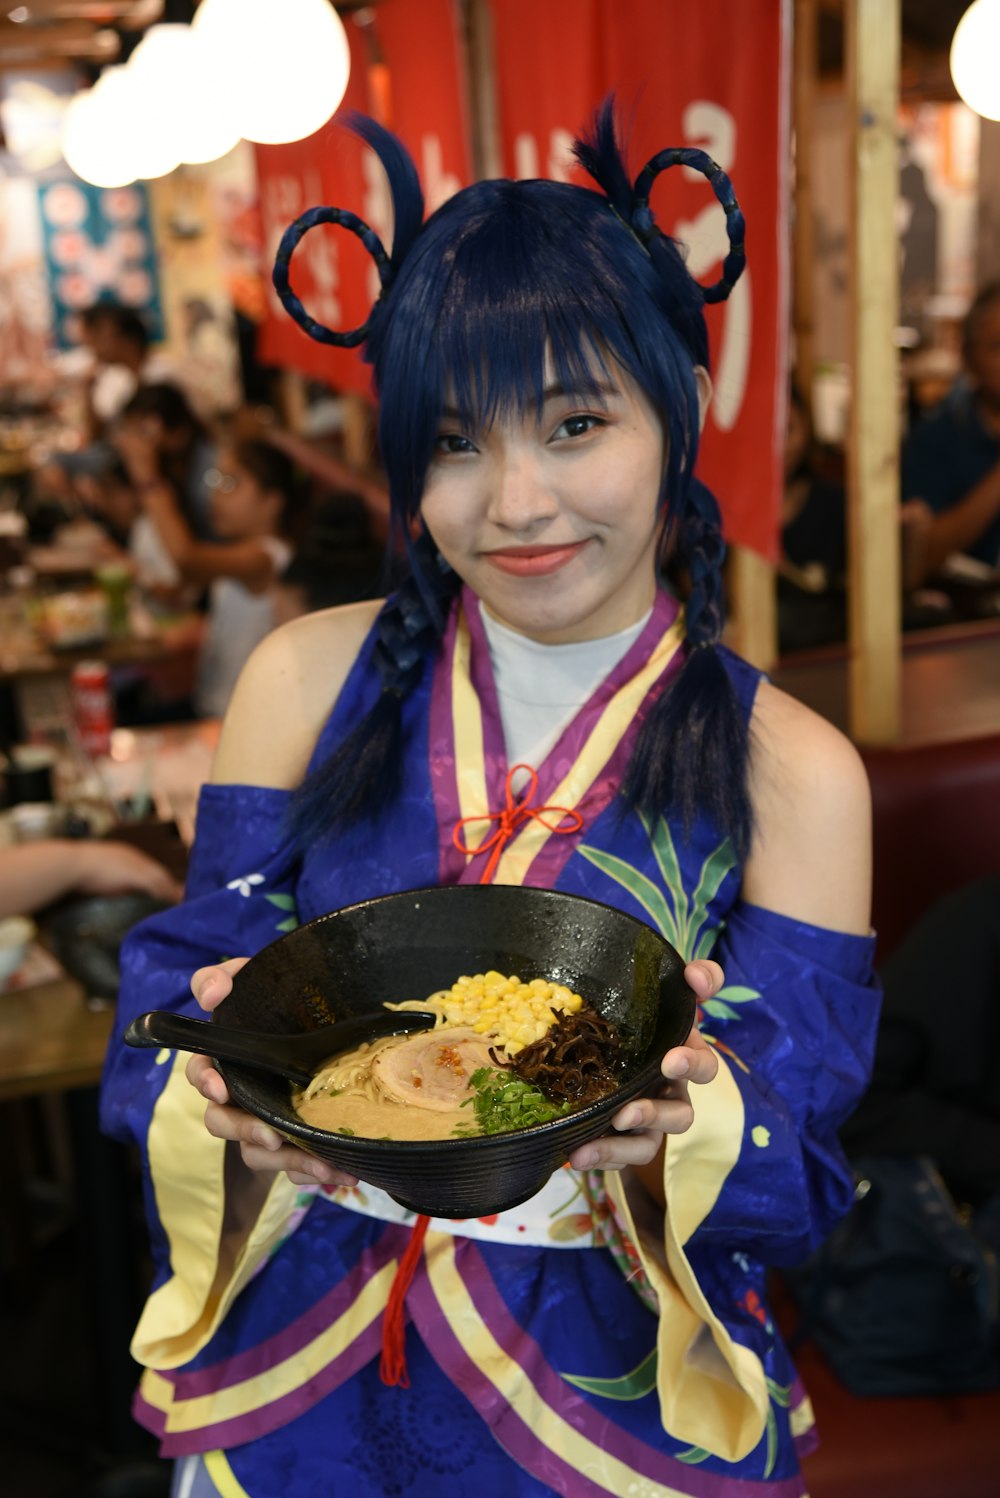 Una mujer disfrazada sosteniendo un plato de comida